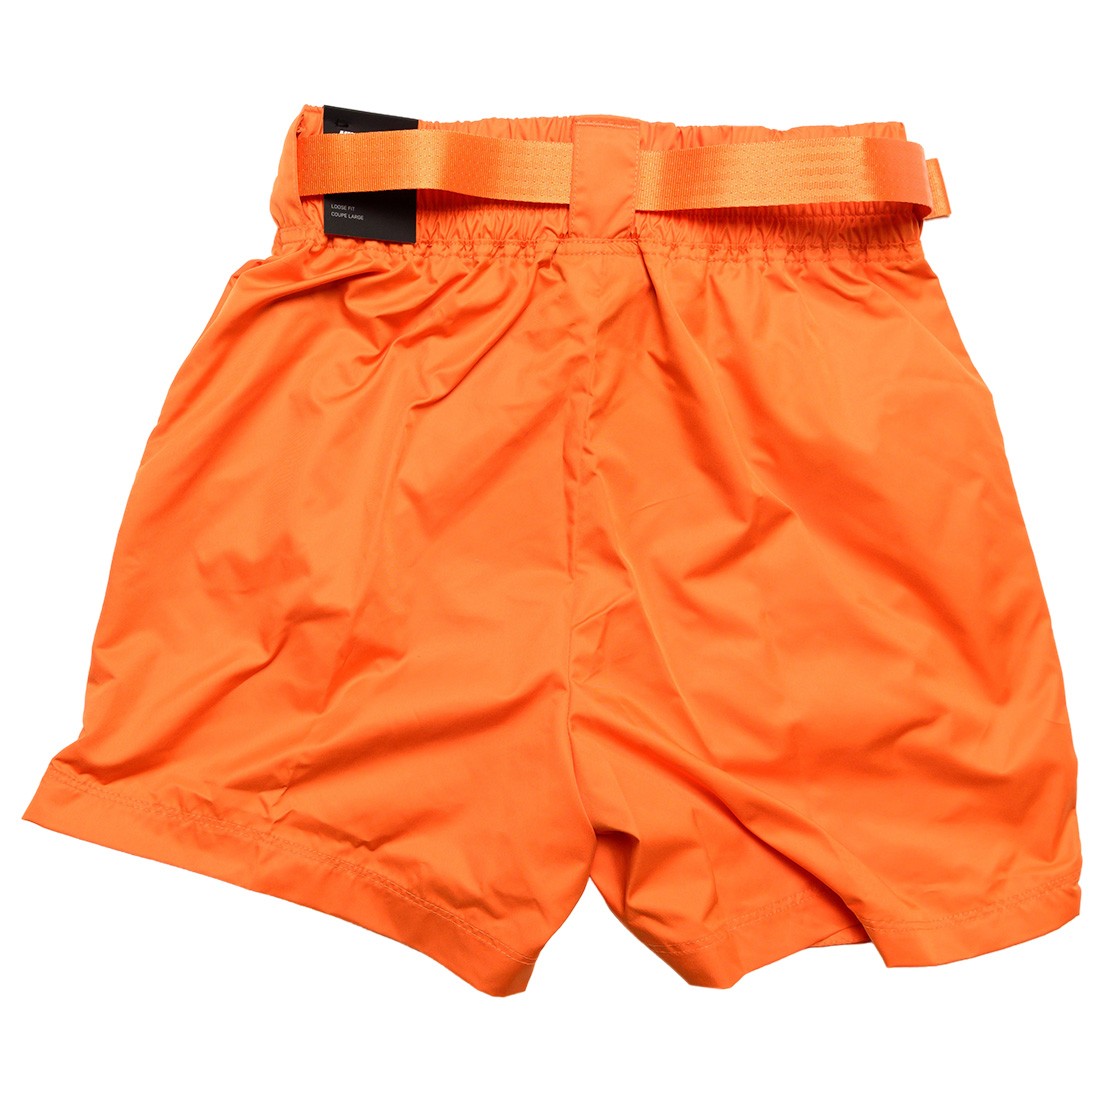 orange nike shorts womens